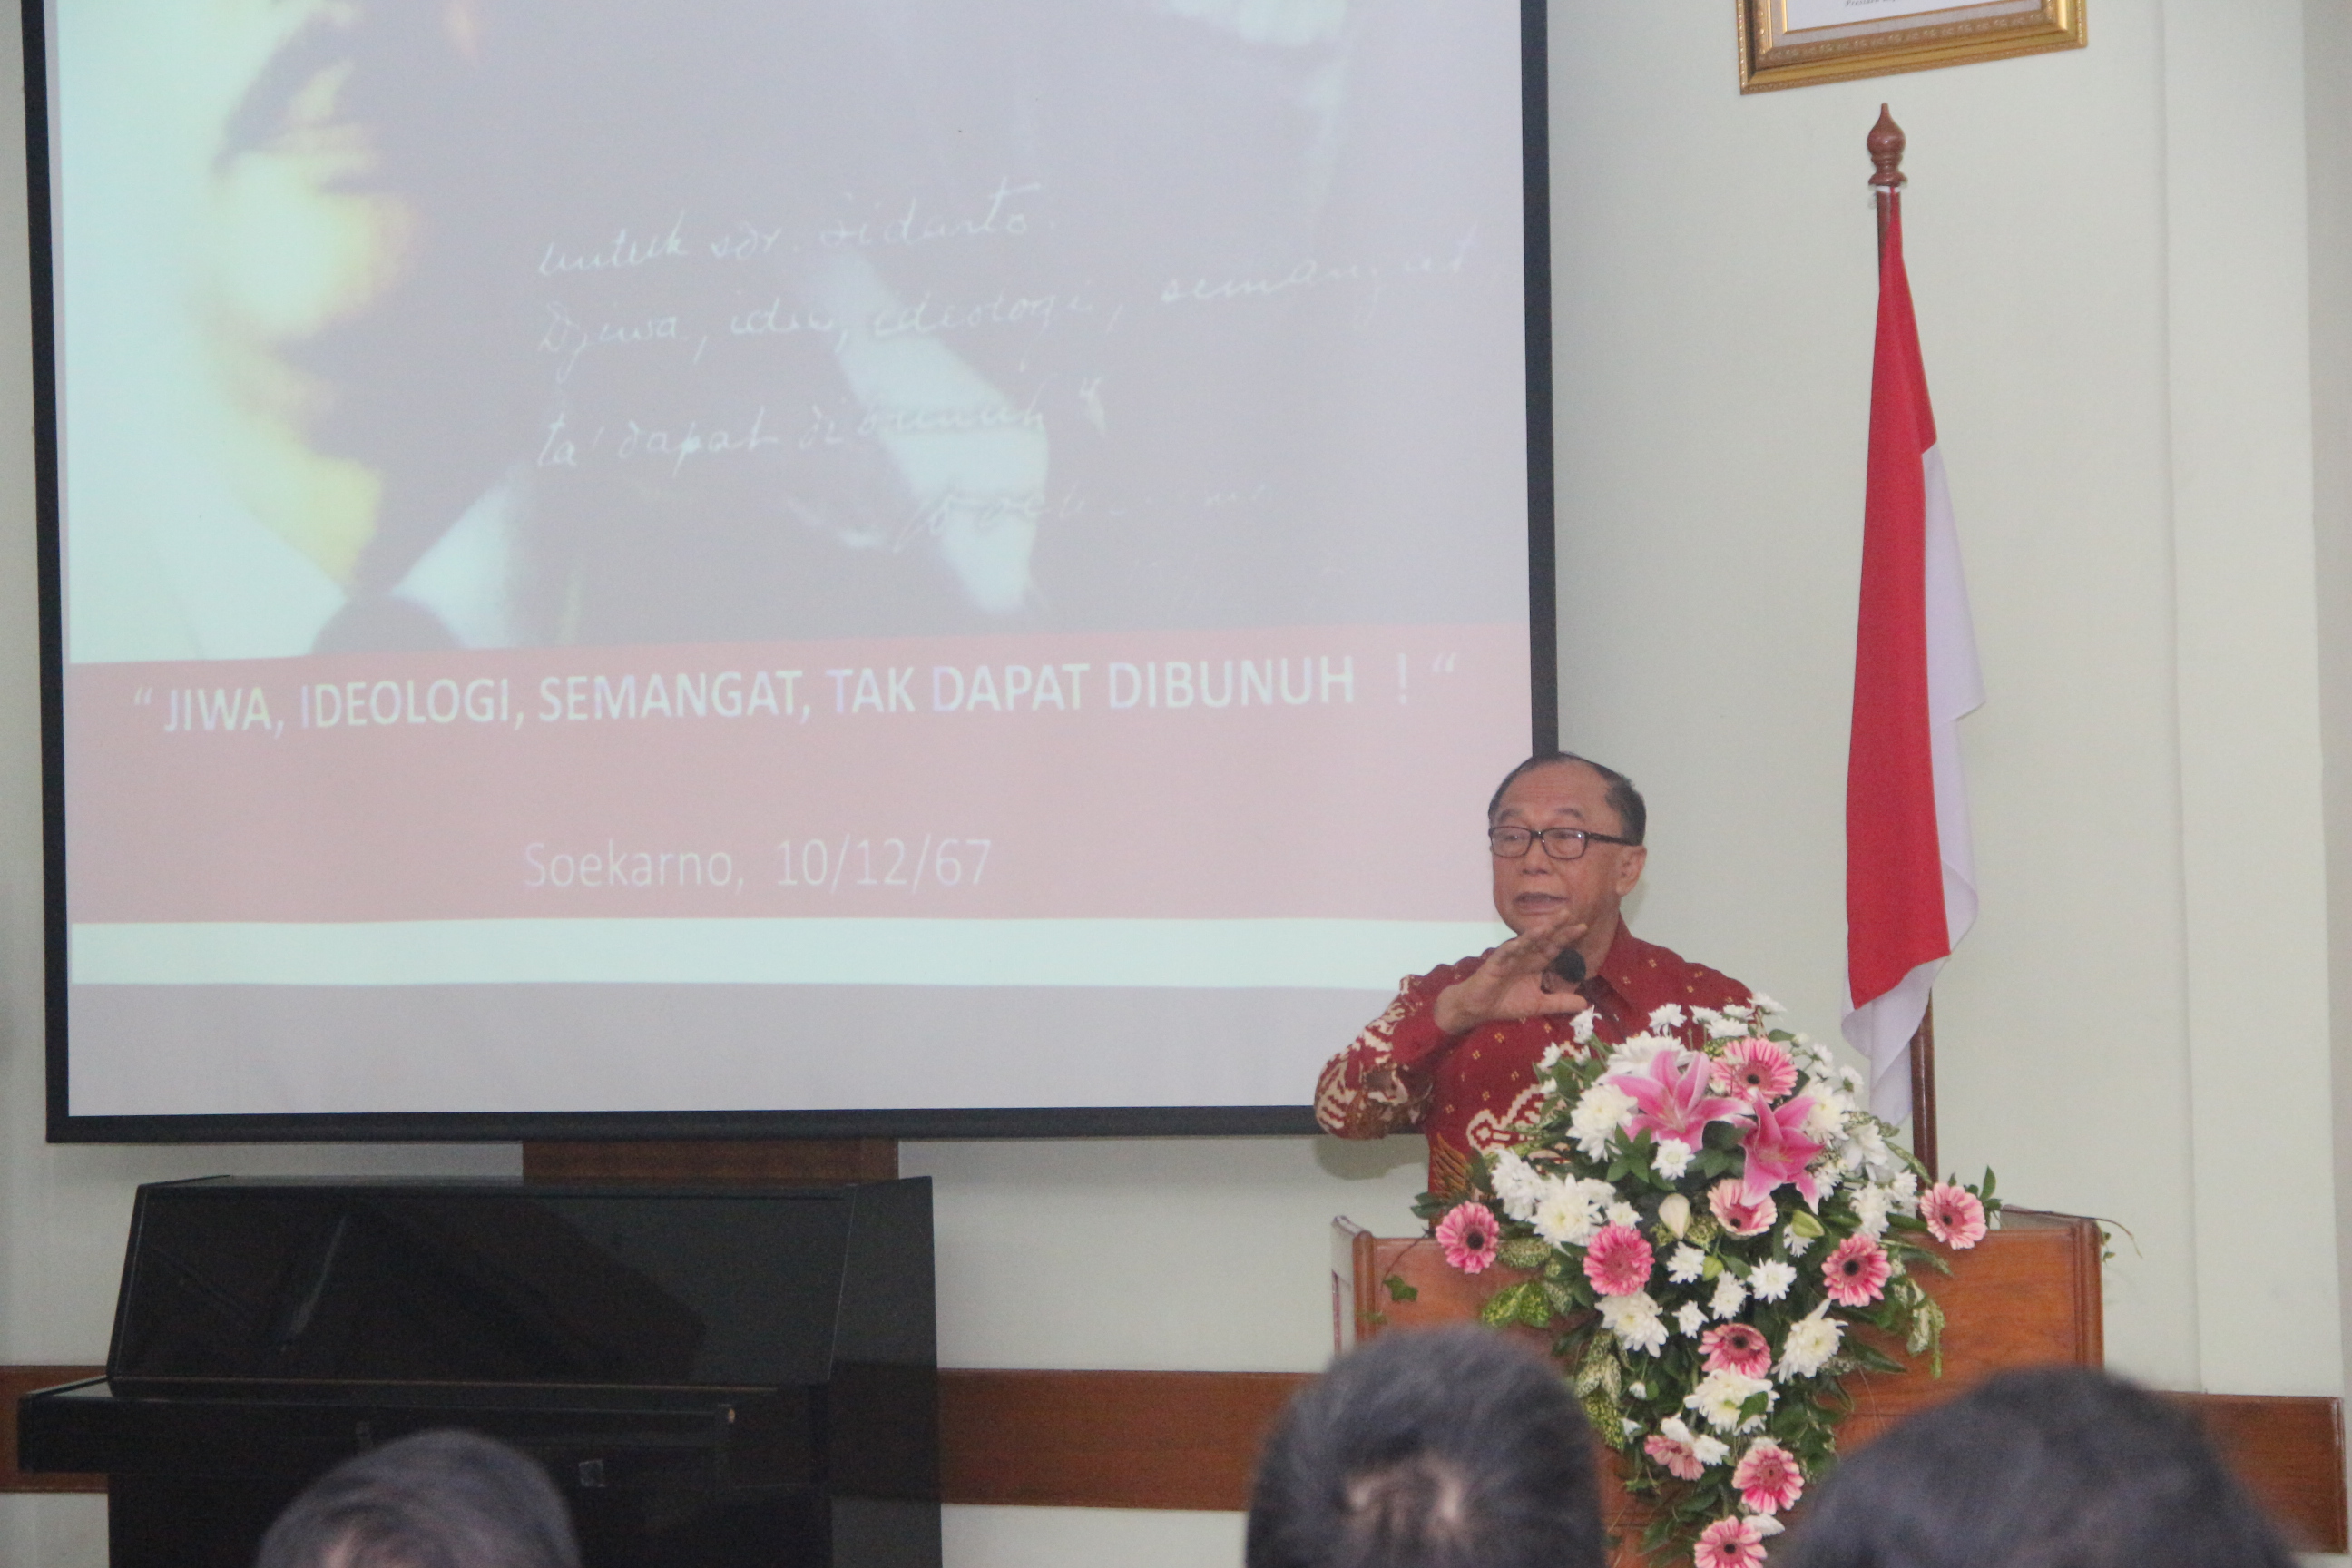 Anggota Dewan Pertimbangan Presiden, Sidarto Danusubroto ketika mengisi kuliah umum di STIE Perbanas Surabaya. 